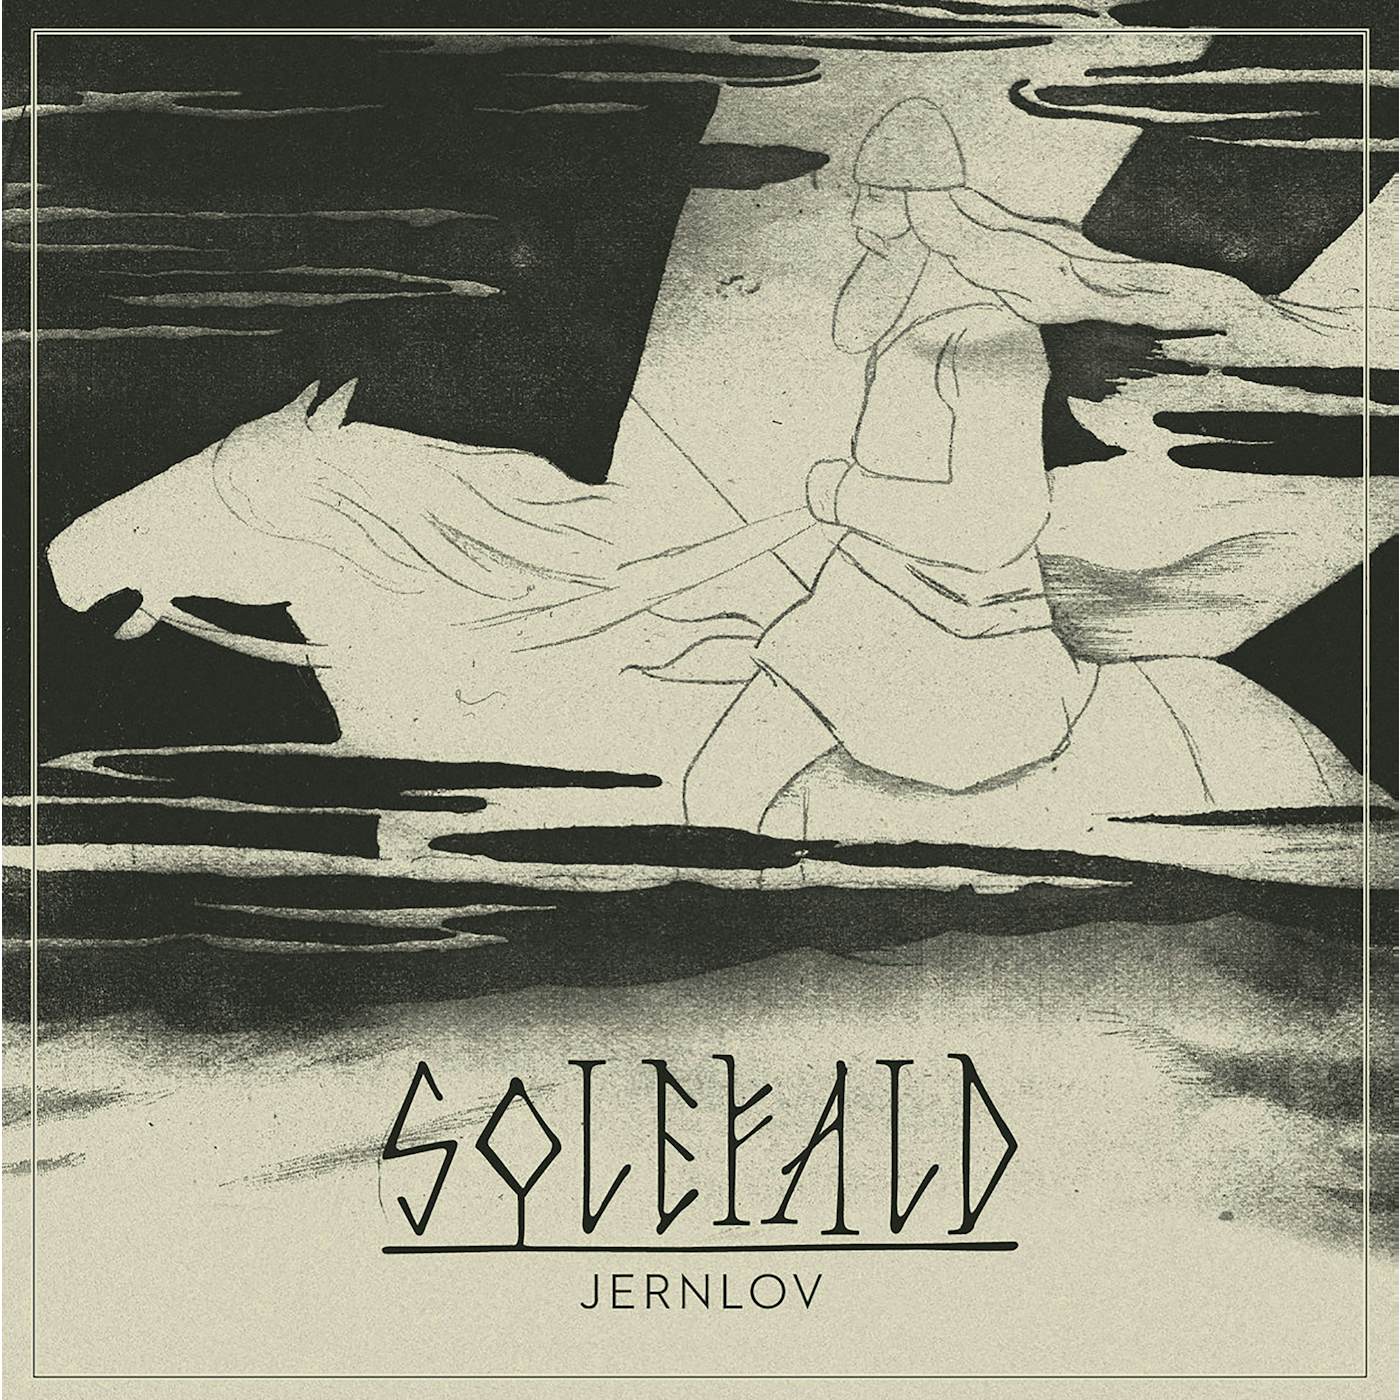 Solefald Jernlov Vinyl Record